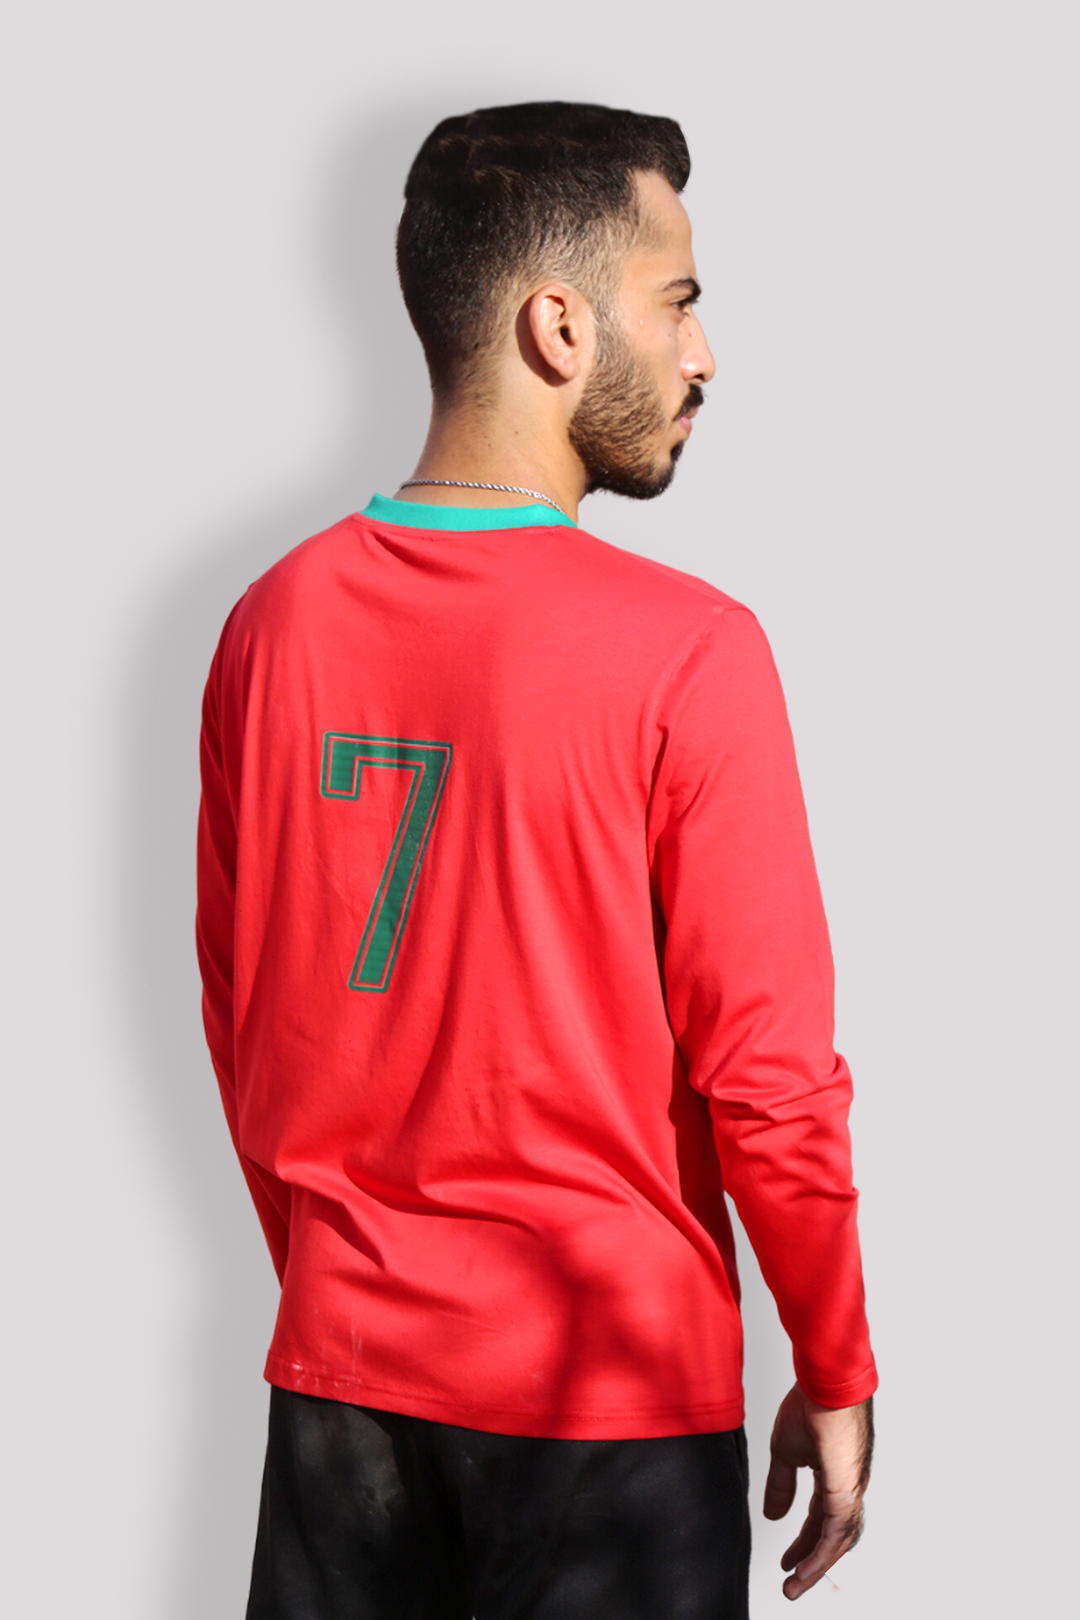 Football Tshirt Red - Portugal